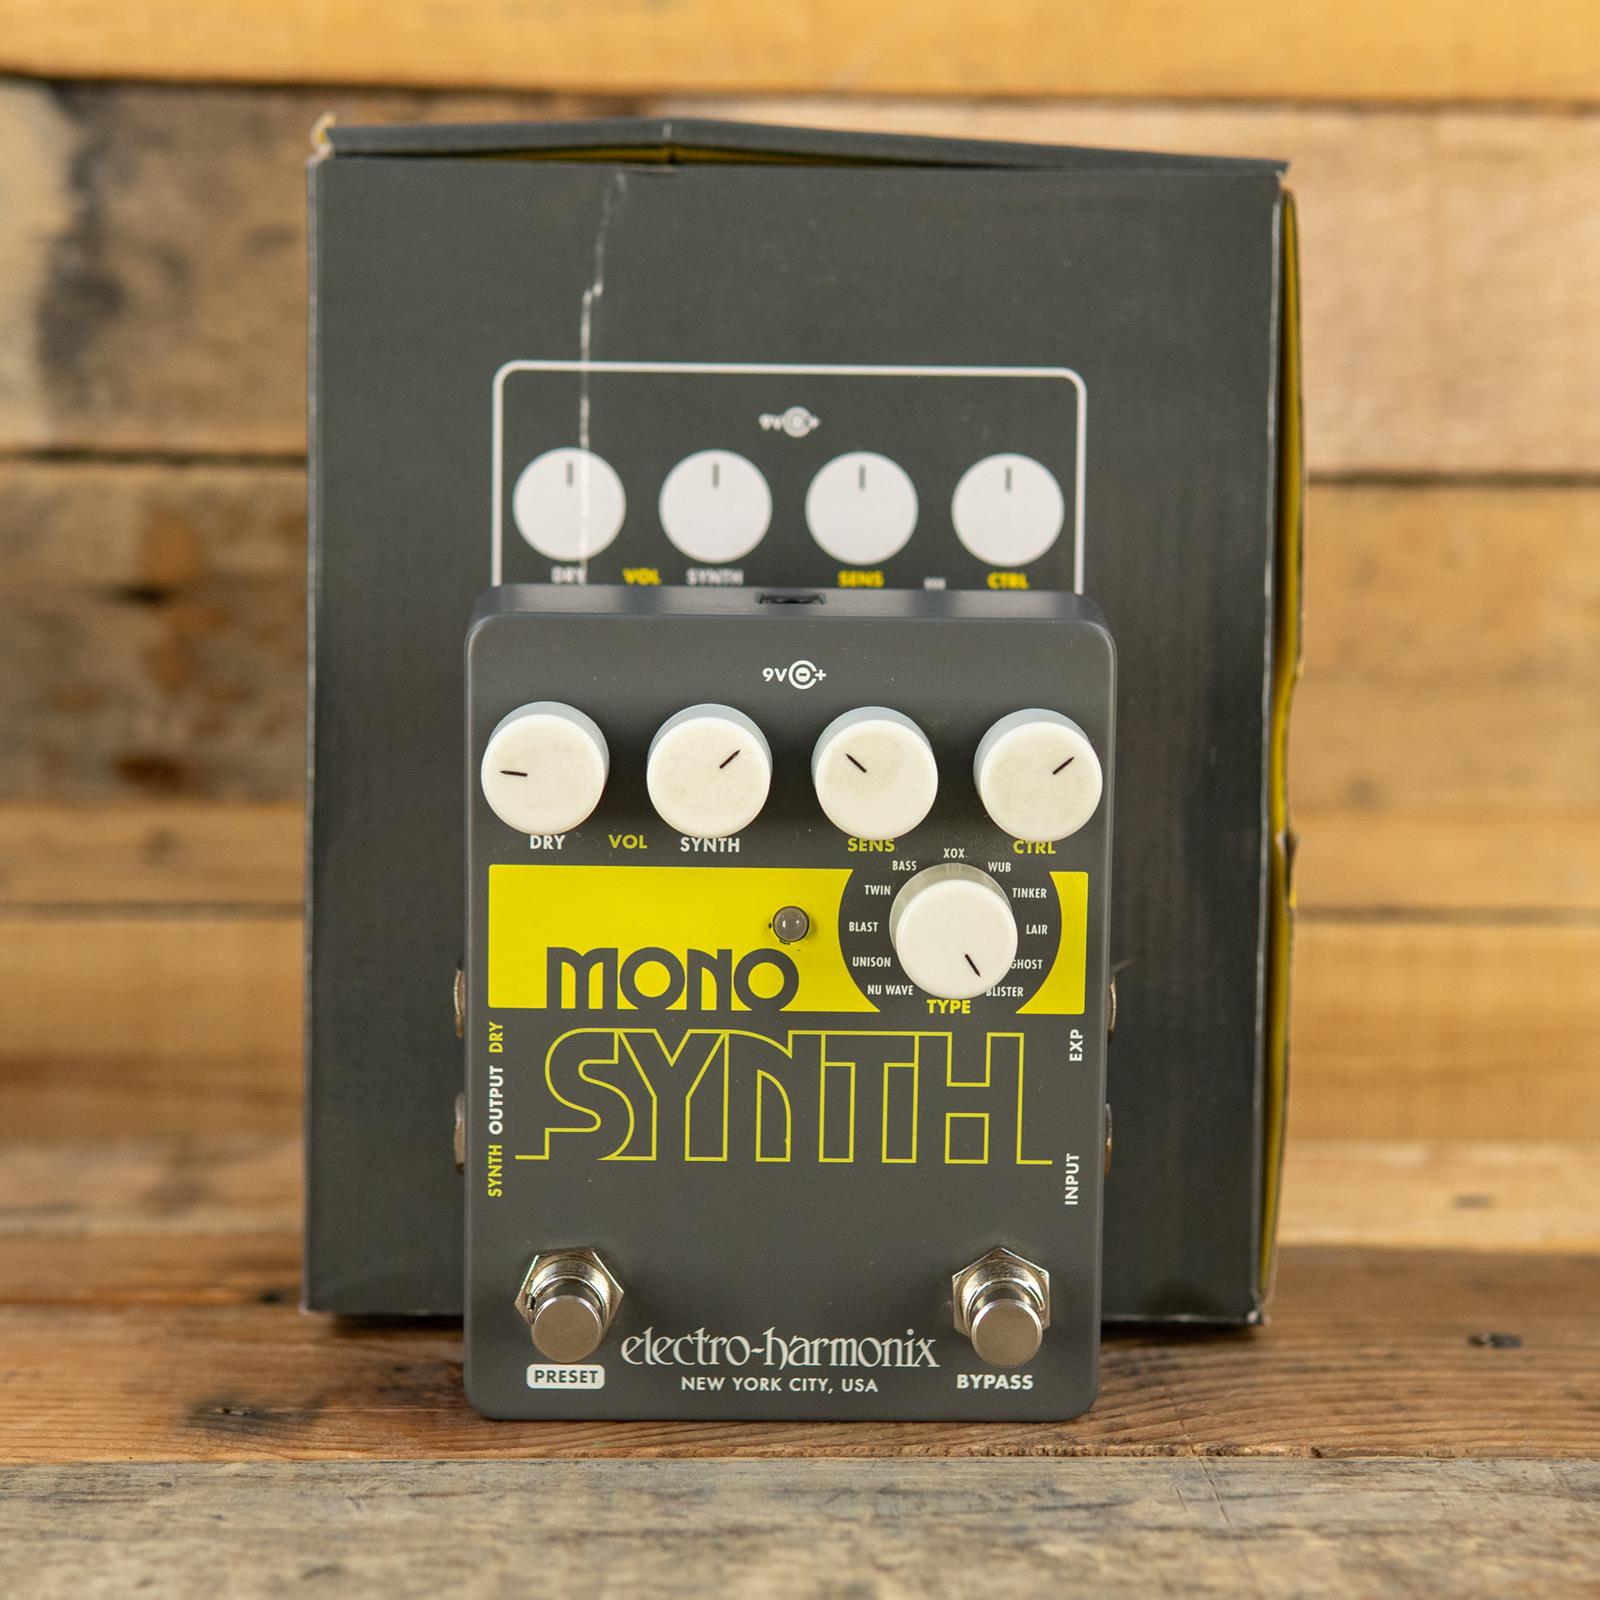 Electroharmonix Mono Synth Guitar Synthesizer - USED